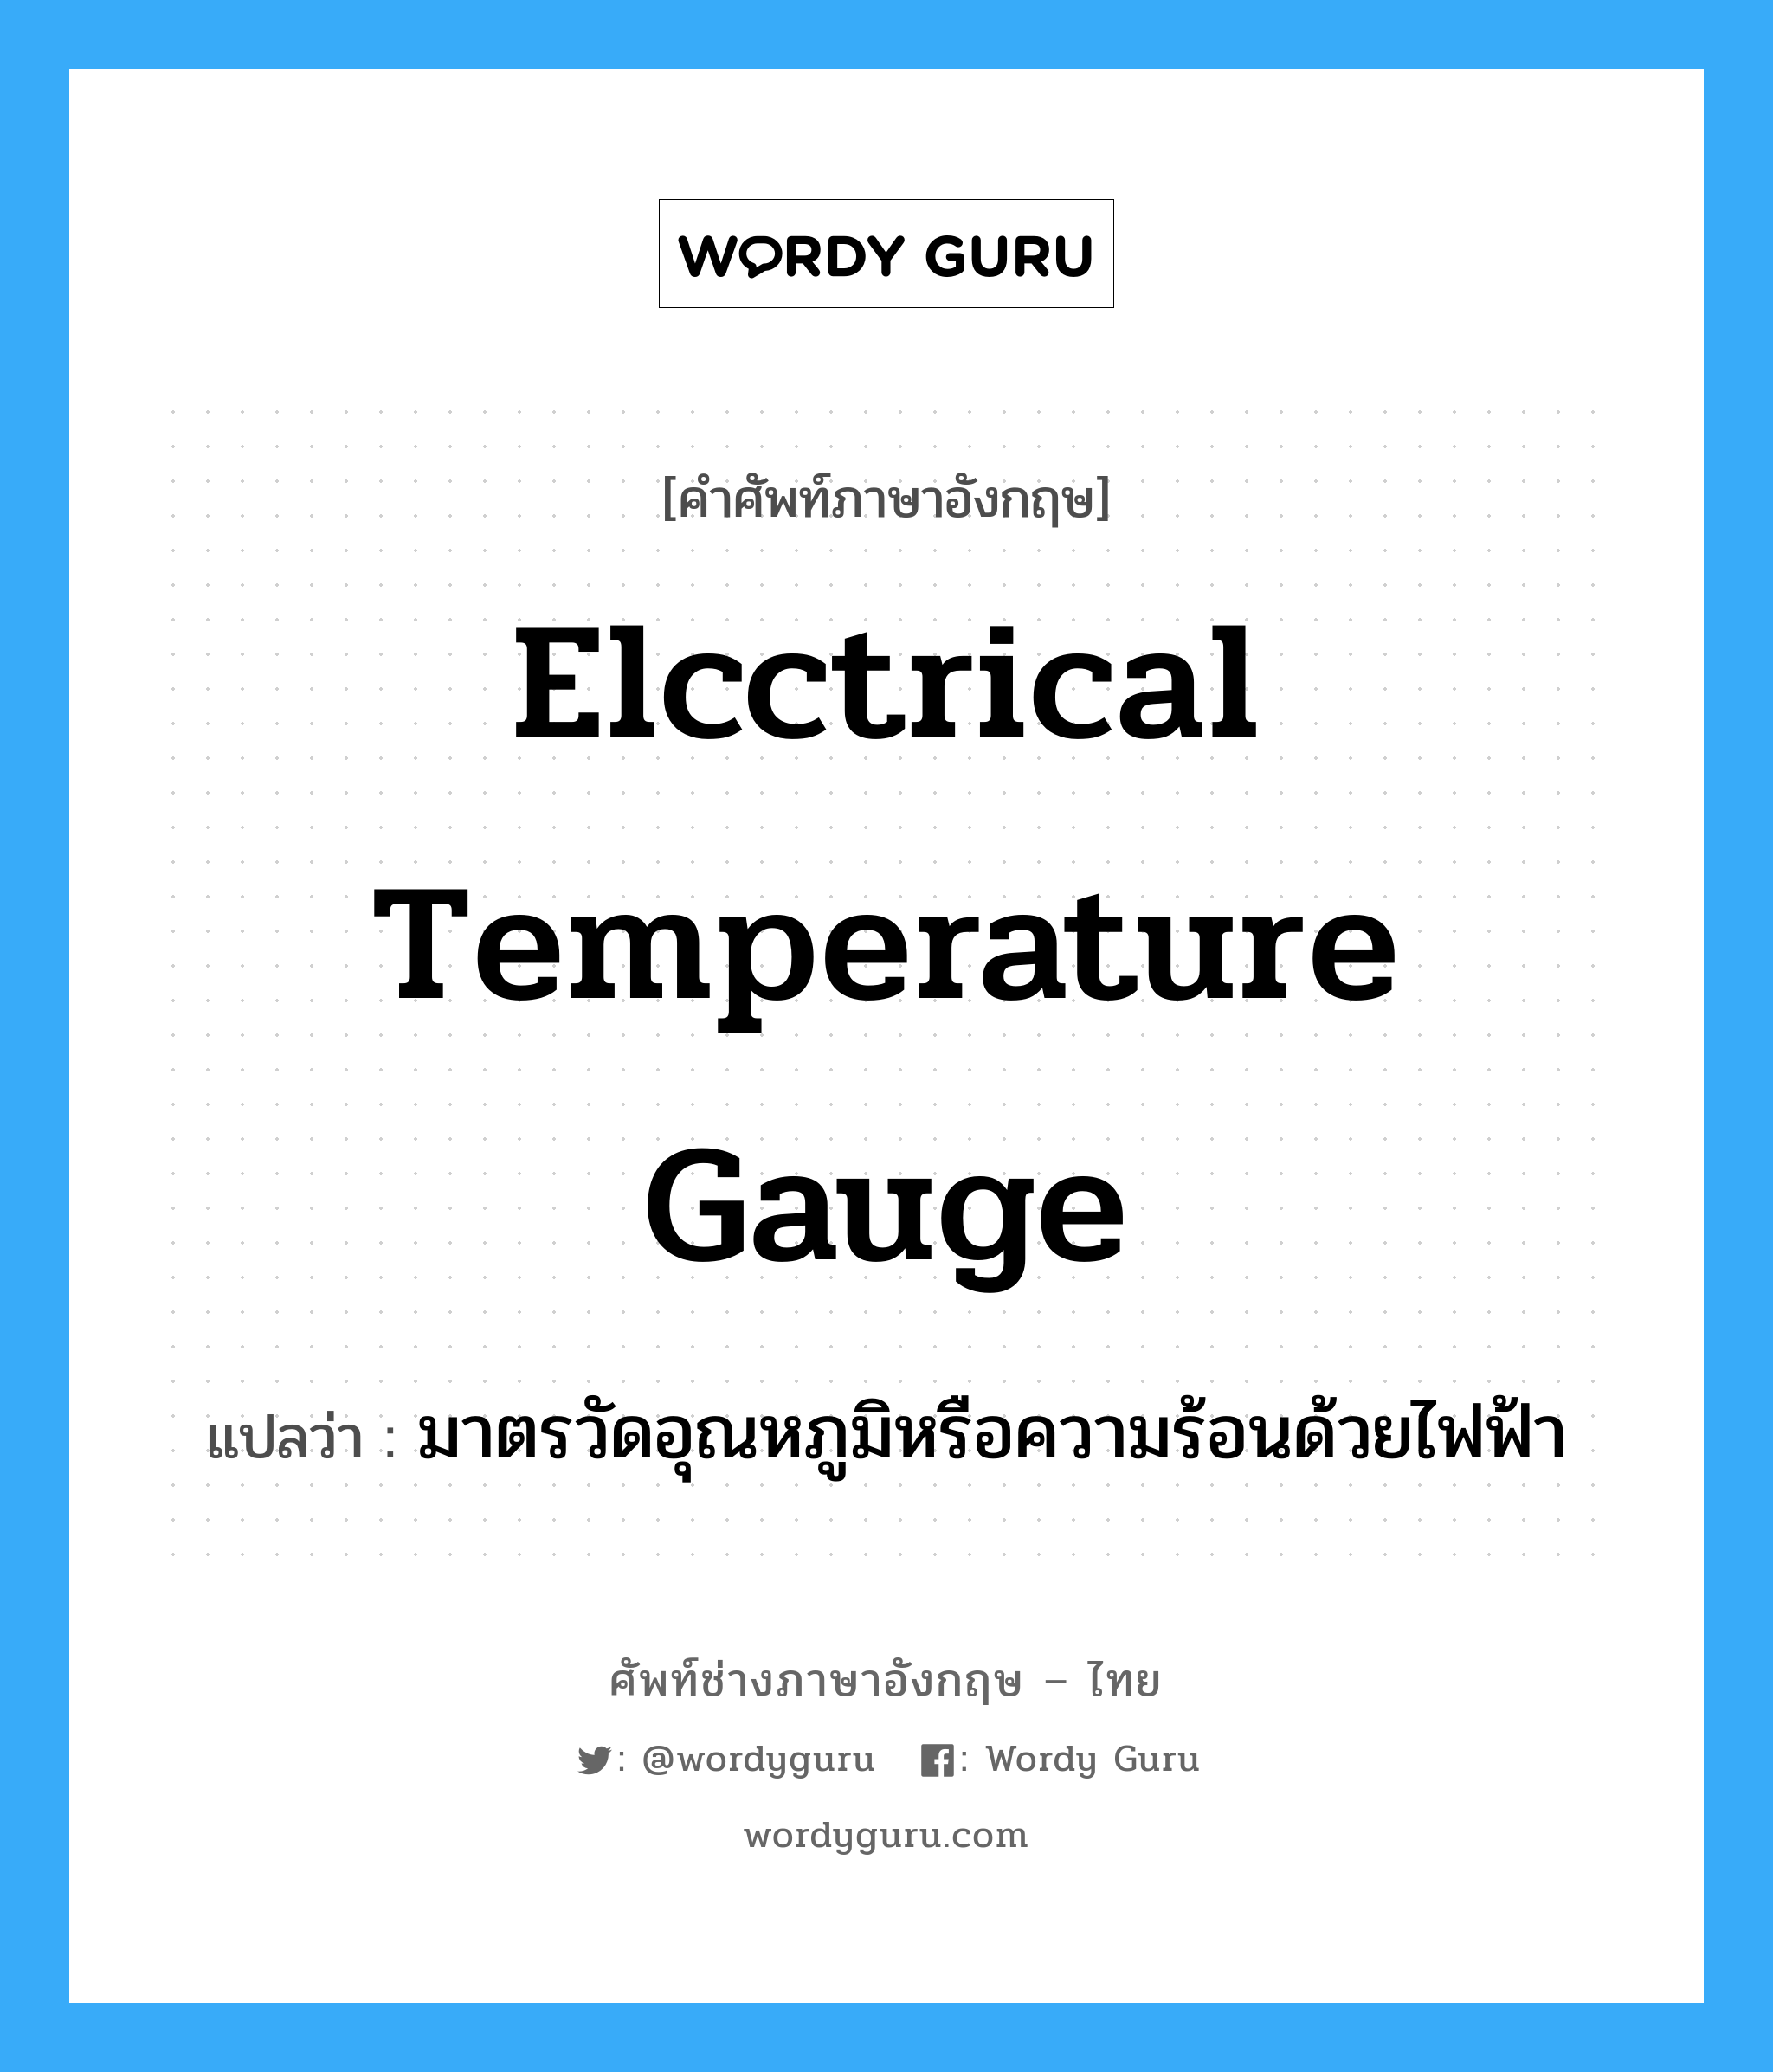 มาตรวัดอุณหภูมิหรือความร้อนด้วยไฟฟ้า ภาษาอังกฤษ?, คำศัพท์ช่างภาษาอังกฤษ - ไทย มาตรวัดอุณหภูมิหรือความร้อนด้วยไฟฟ้า คำศัพท์ภาษาอังกฤษ มาตรวัดอุณหภูมิหรือความร้อนด้วยไฟฟ้า แปลว่า elcctrical temperature gauge